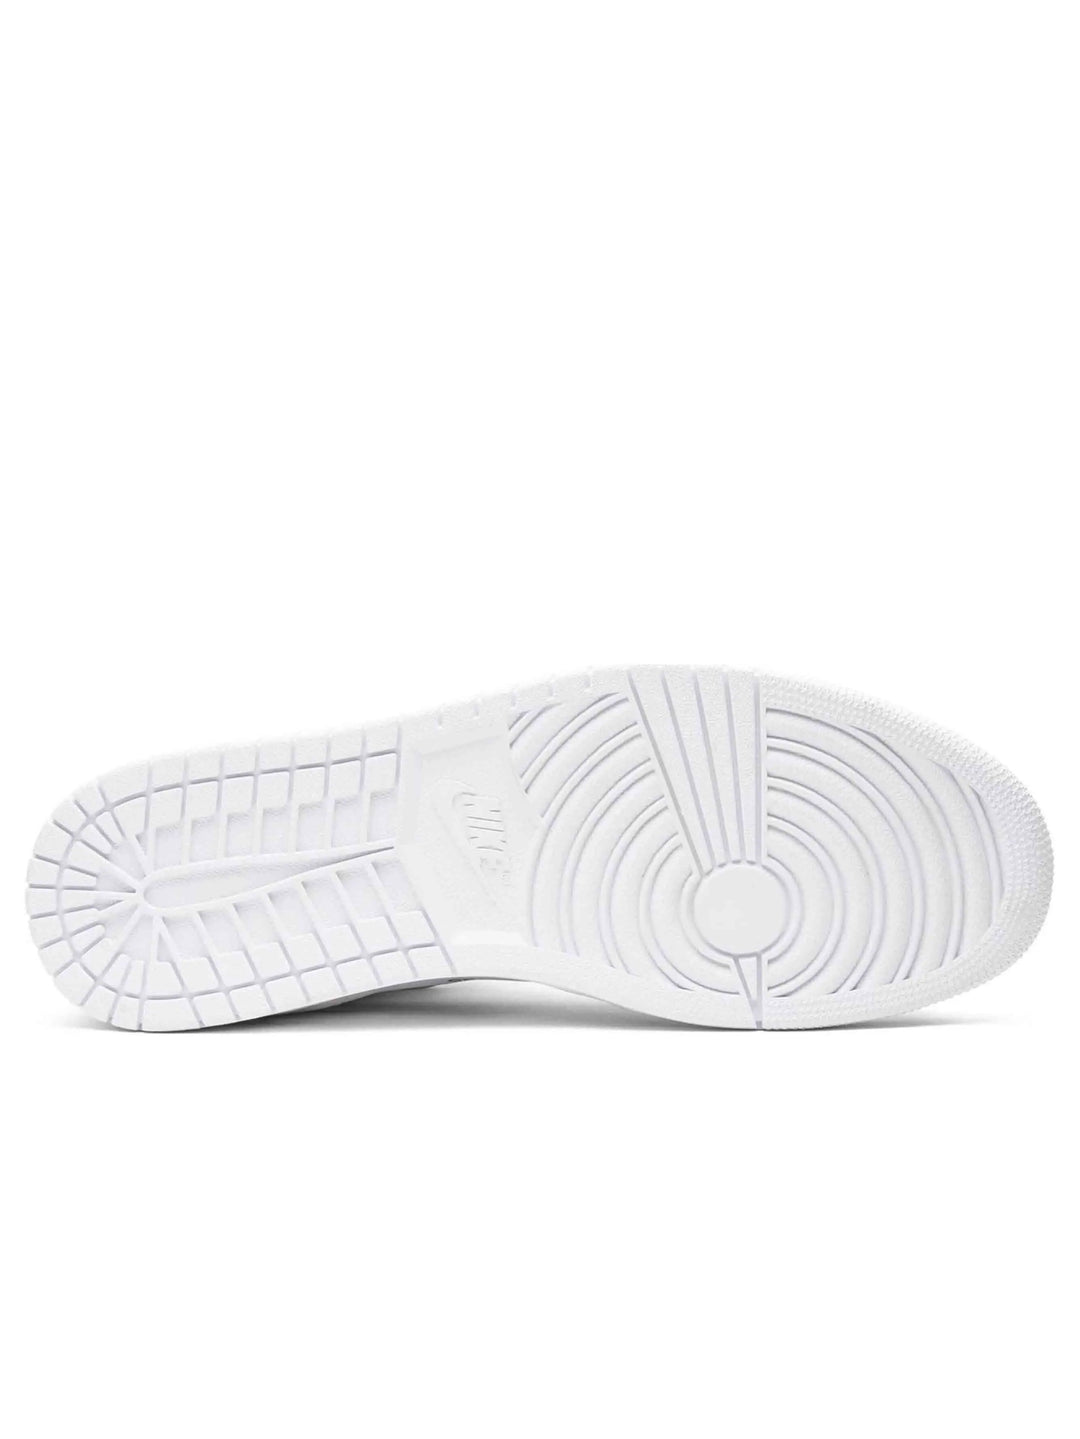 Nike Air Jordan 1 Retro High Off-White White Prior